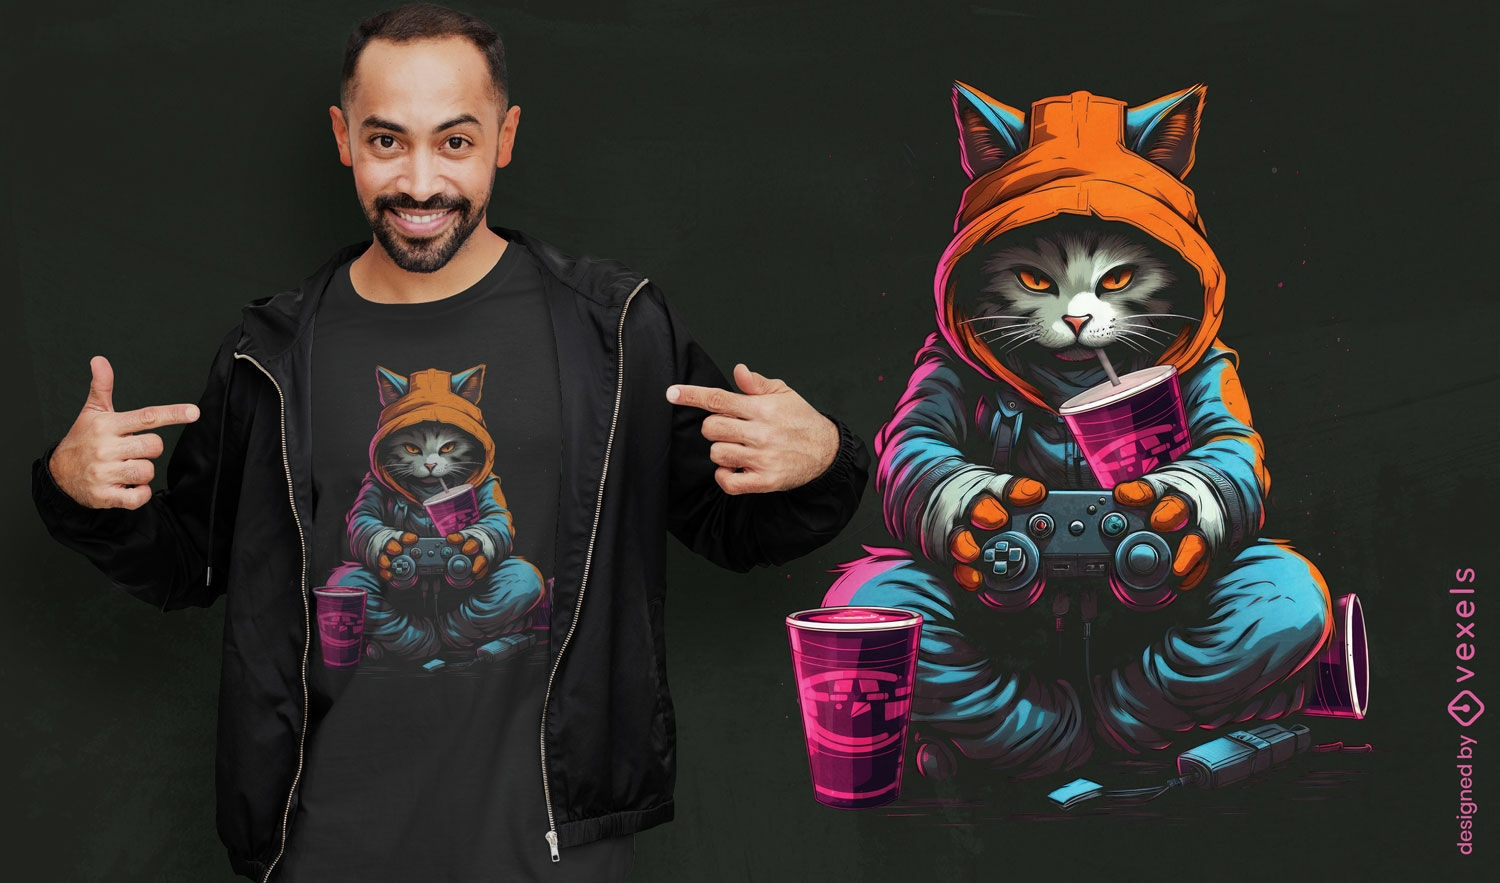 Dise?o de camiseta con ilustraci?n de gato gamer.